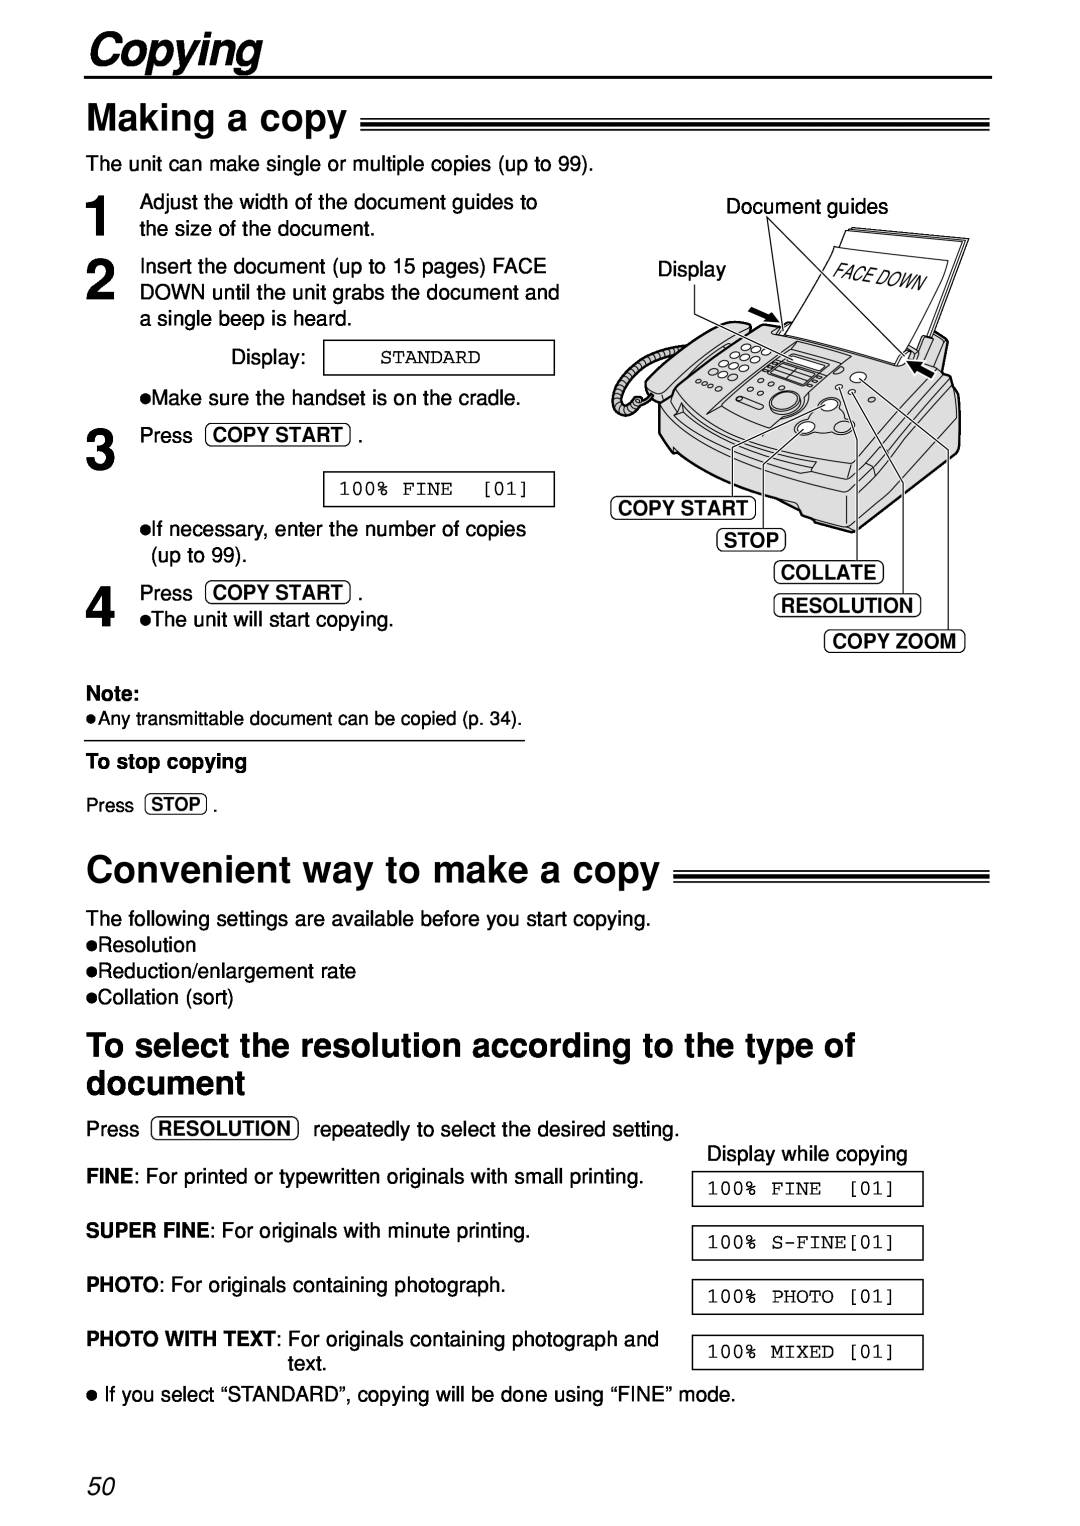 Panasonic KX-FL501C manual Copying, Making a copy, Convenient way to make a copy 